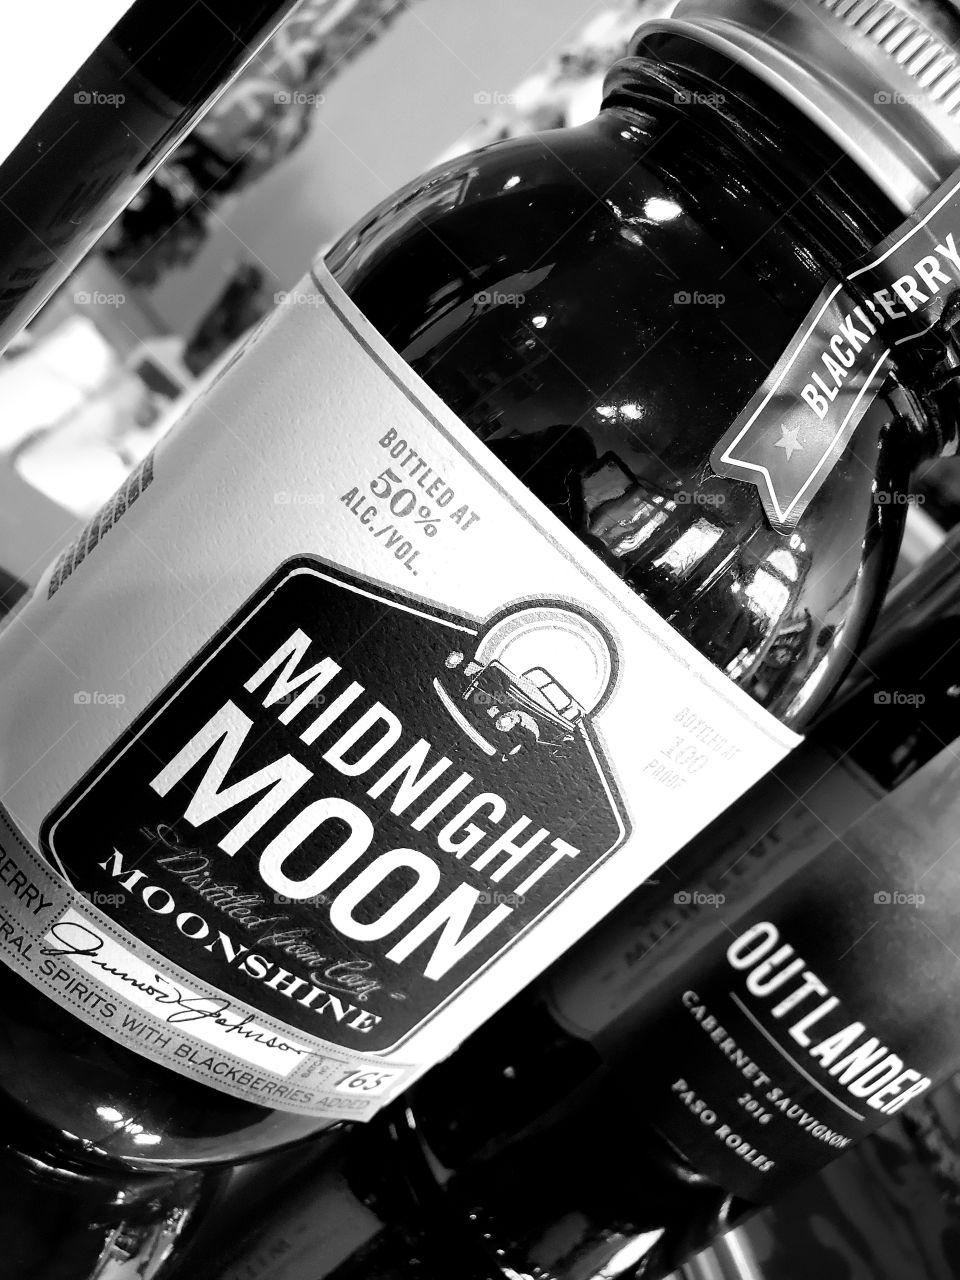 moonshine